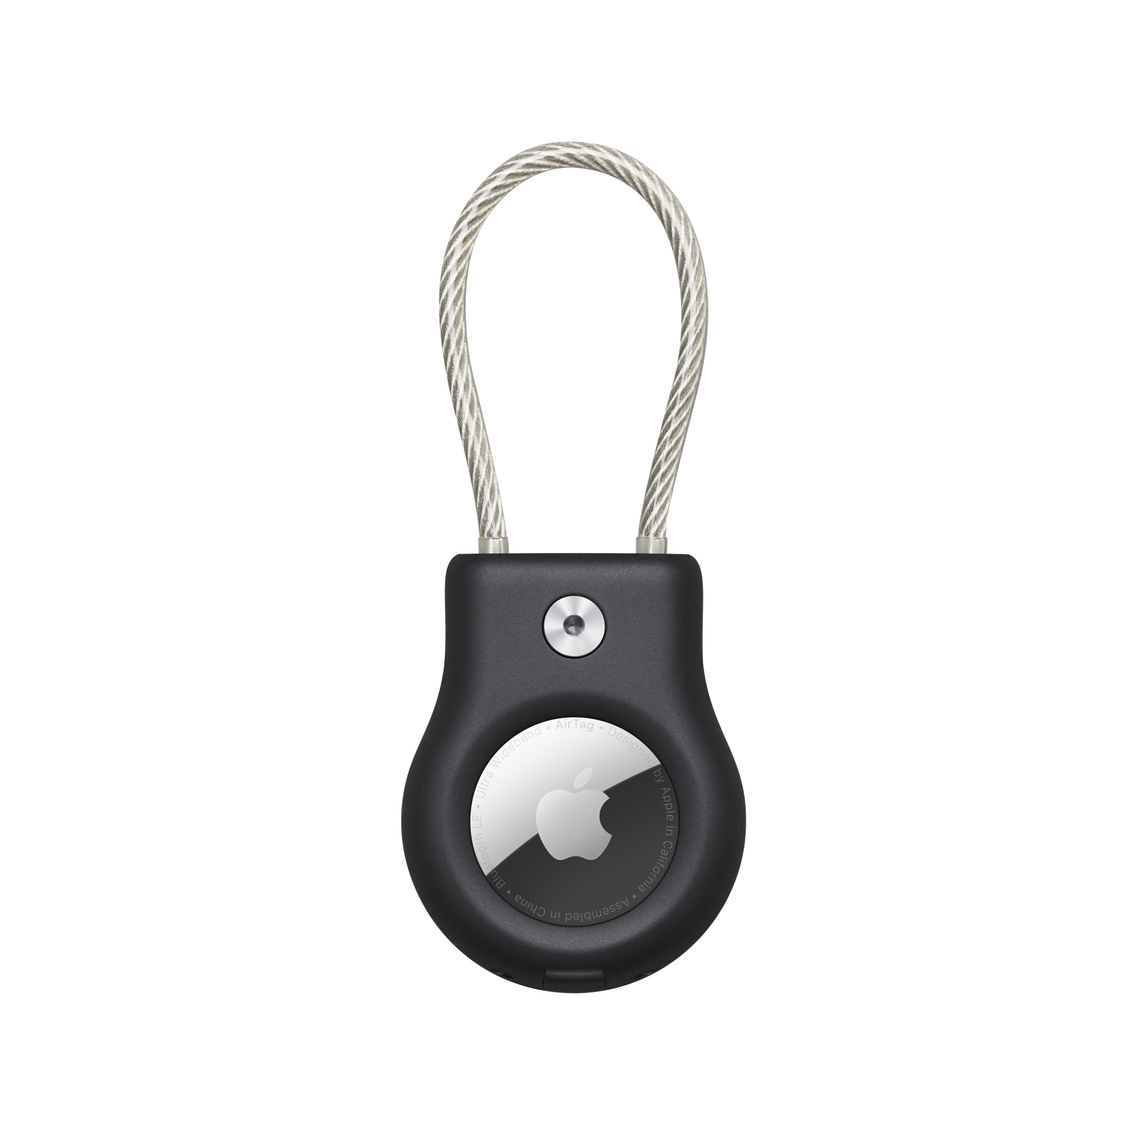 L’étui protecteur noir de Belkin avec câble métallique contient un AirTag avec le logo Apple.